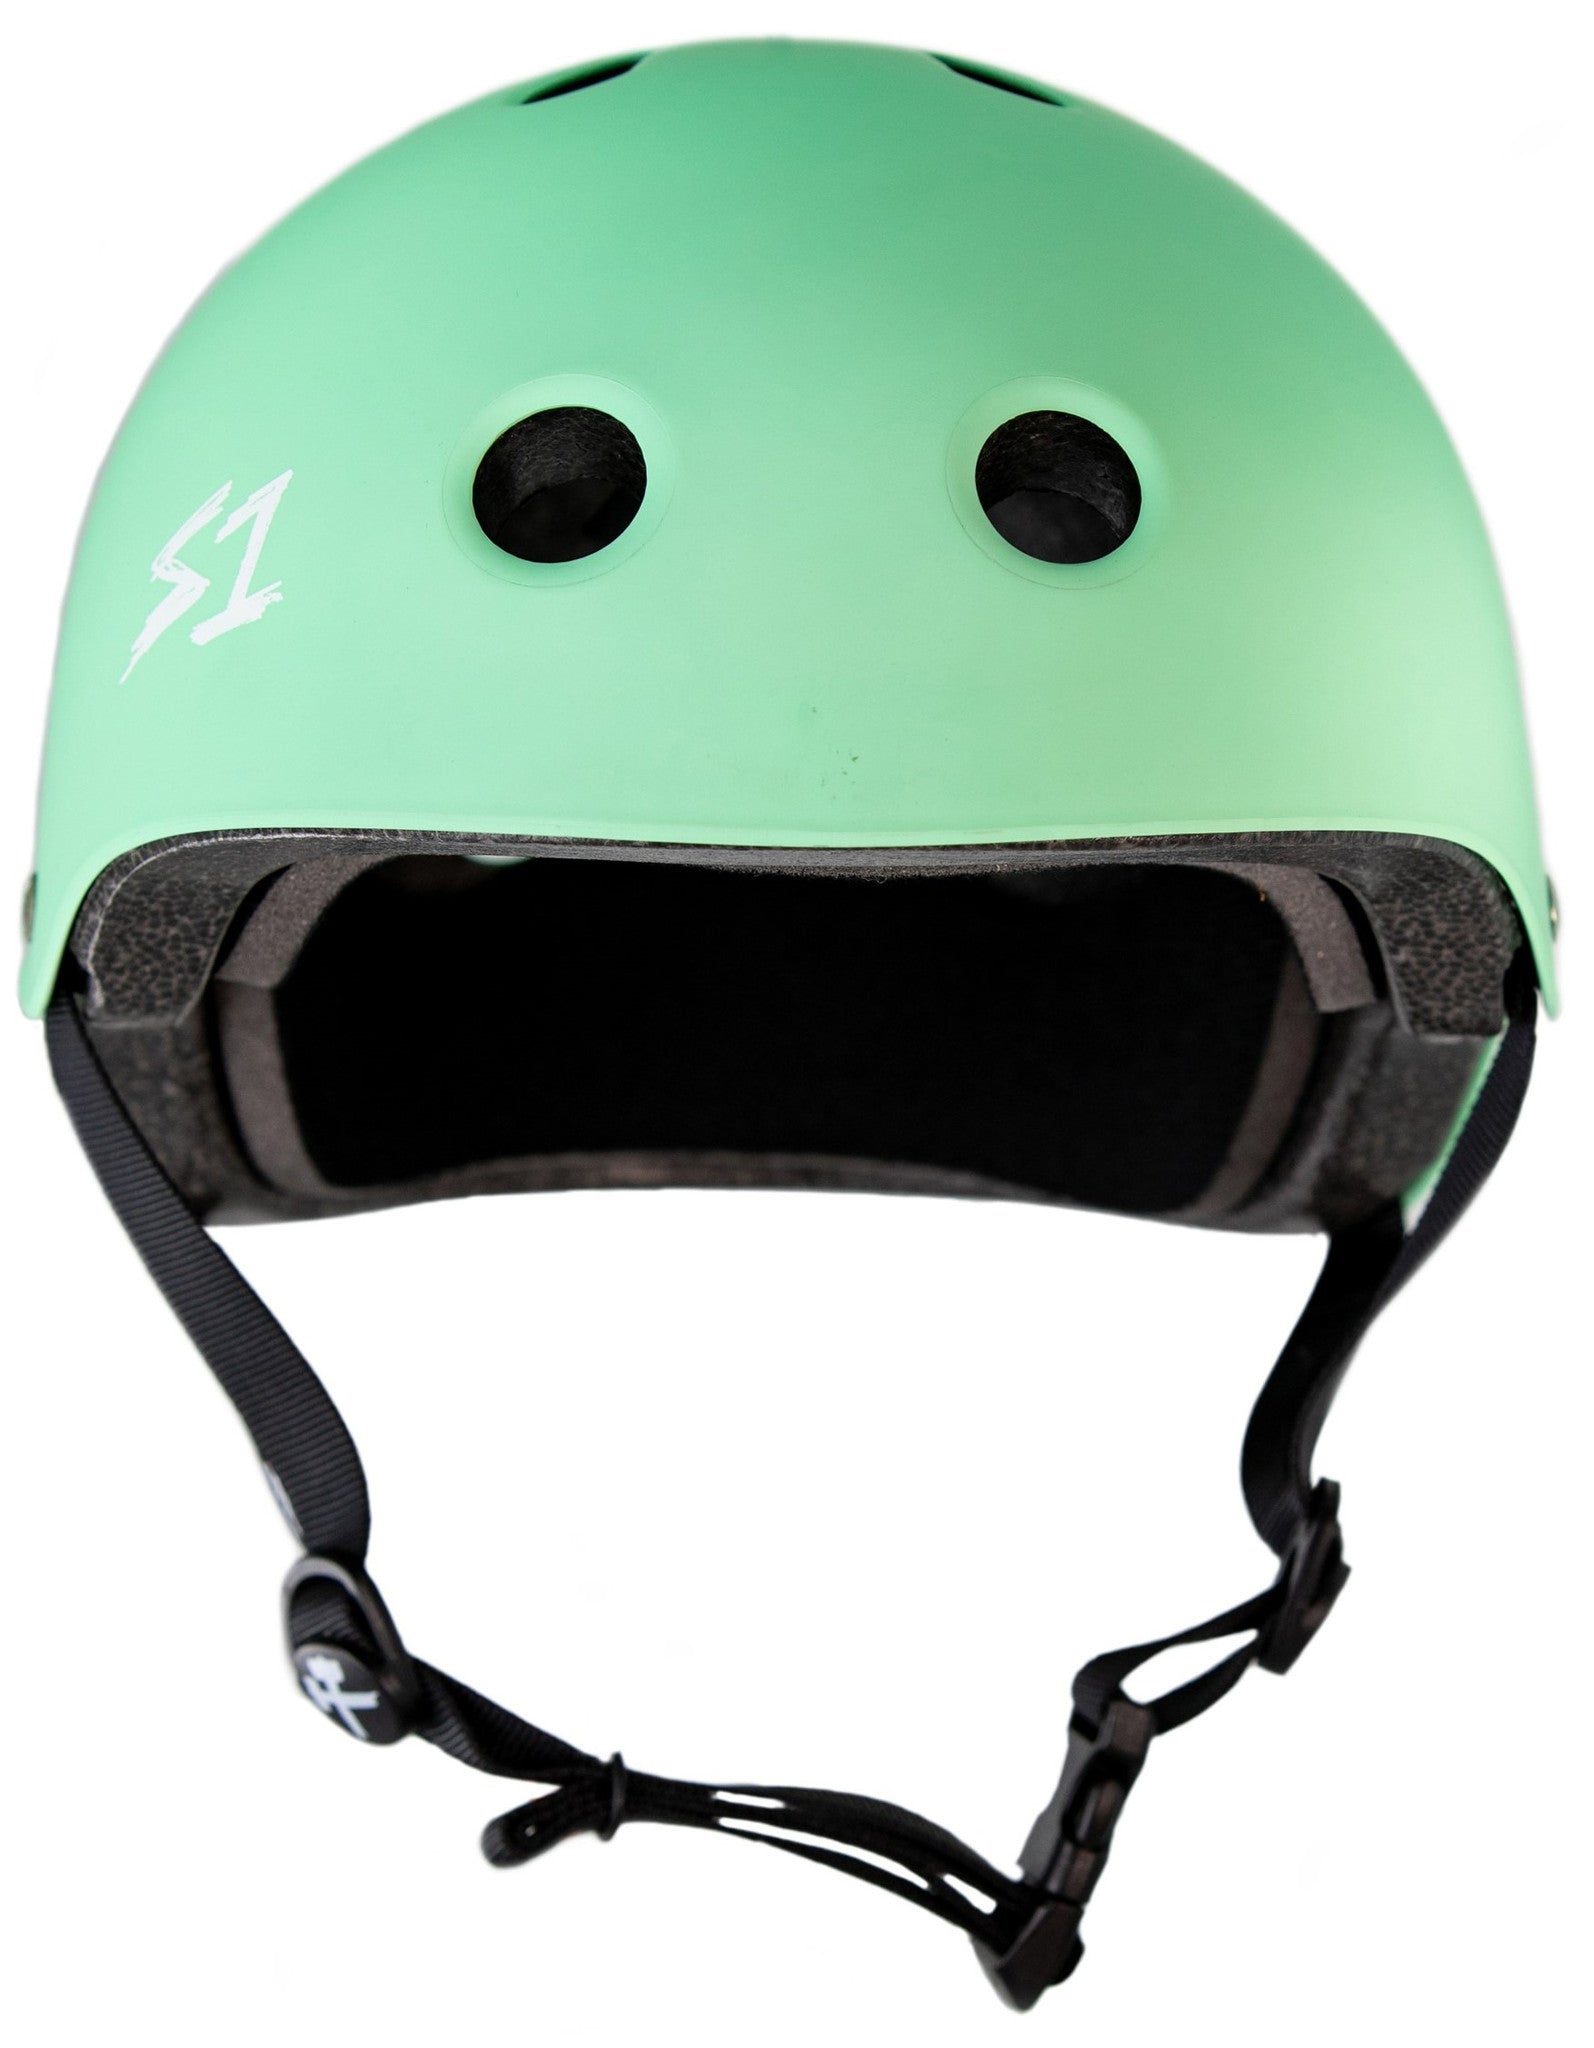 S1 Lifer Helmet - Mint Green Matte – Demo Sport